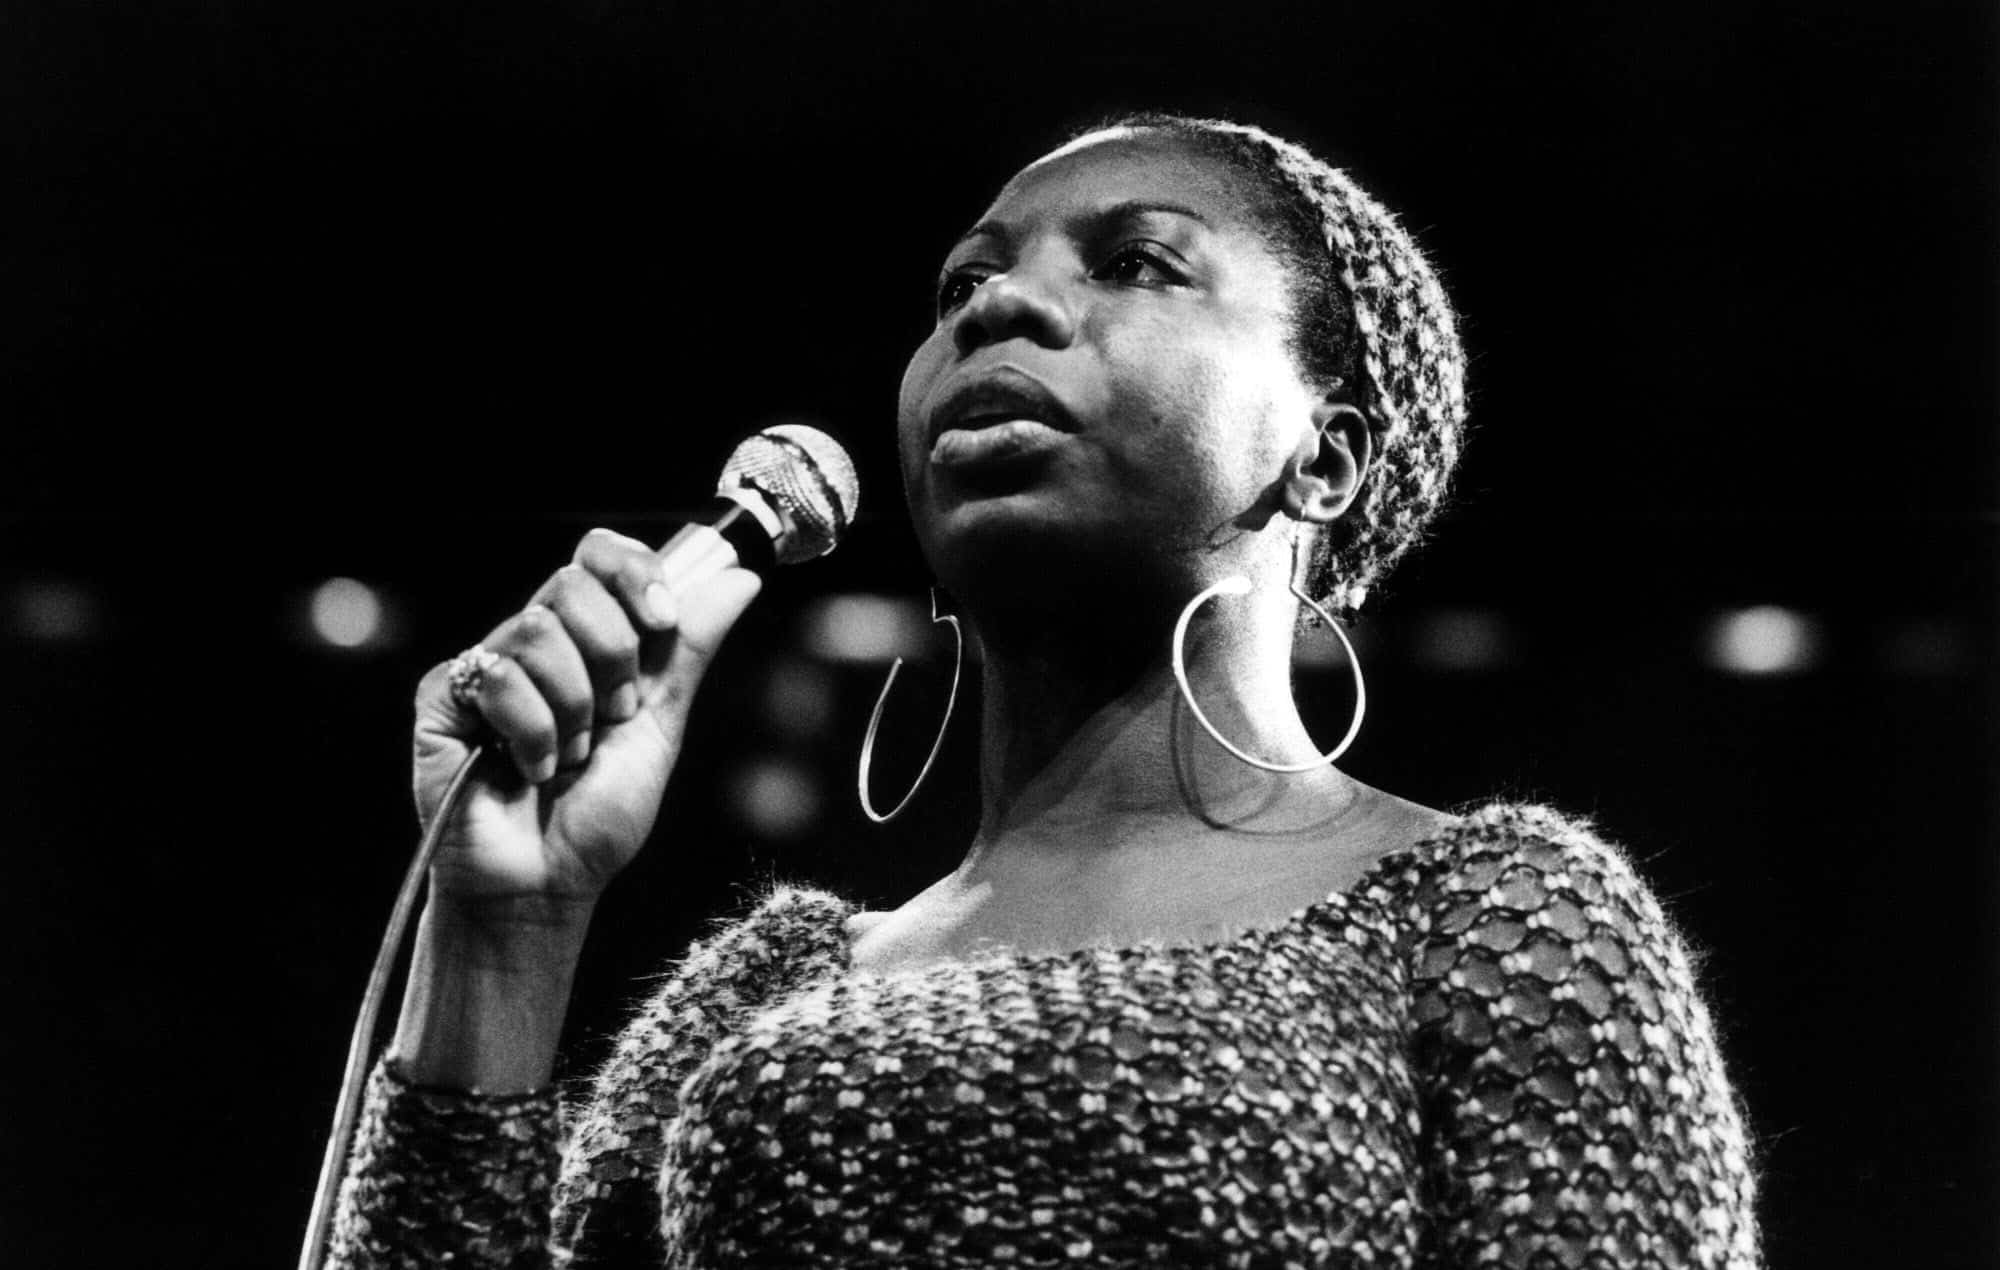 SIMONE,NINA - Real Nina Simone -  Music